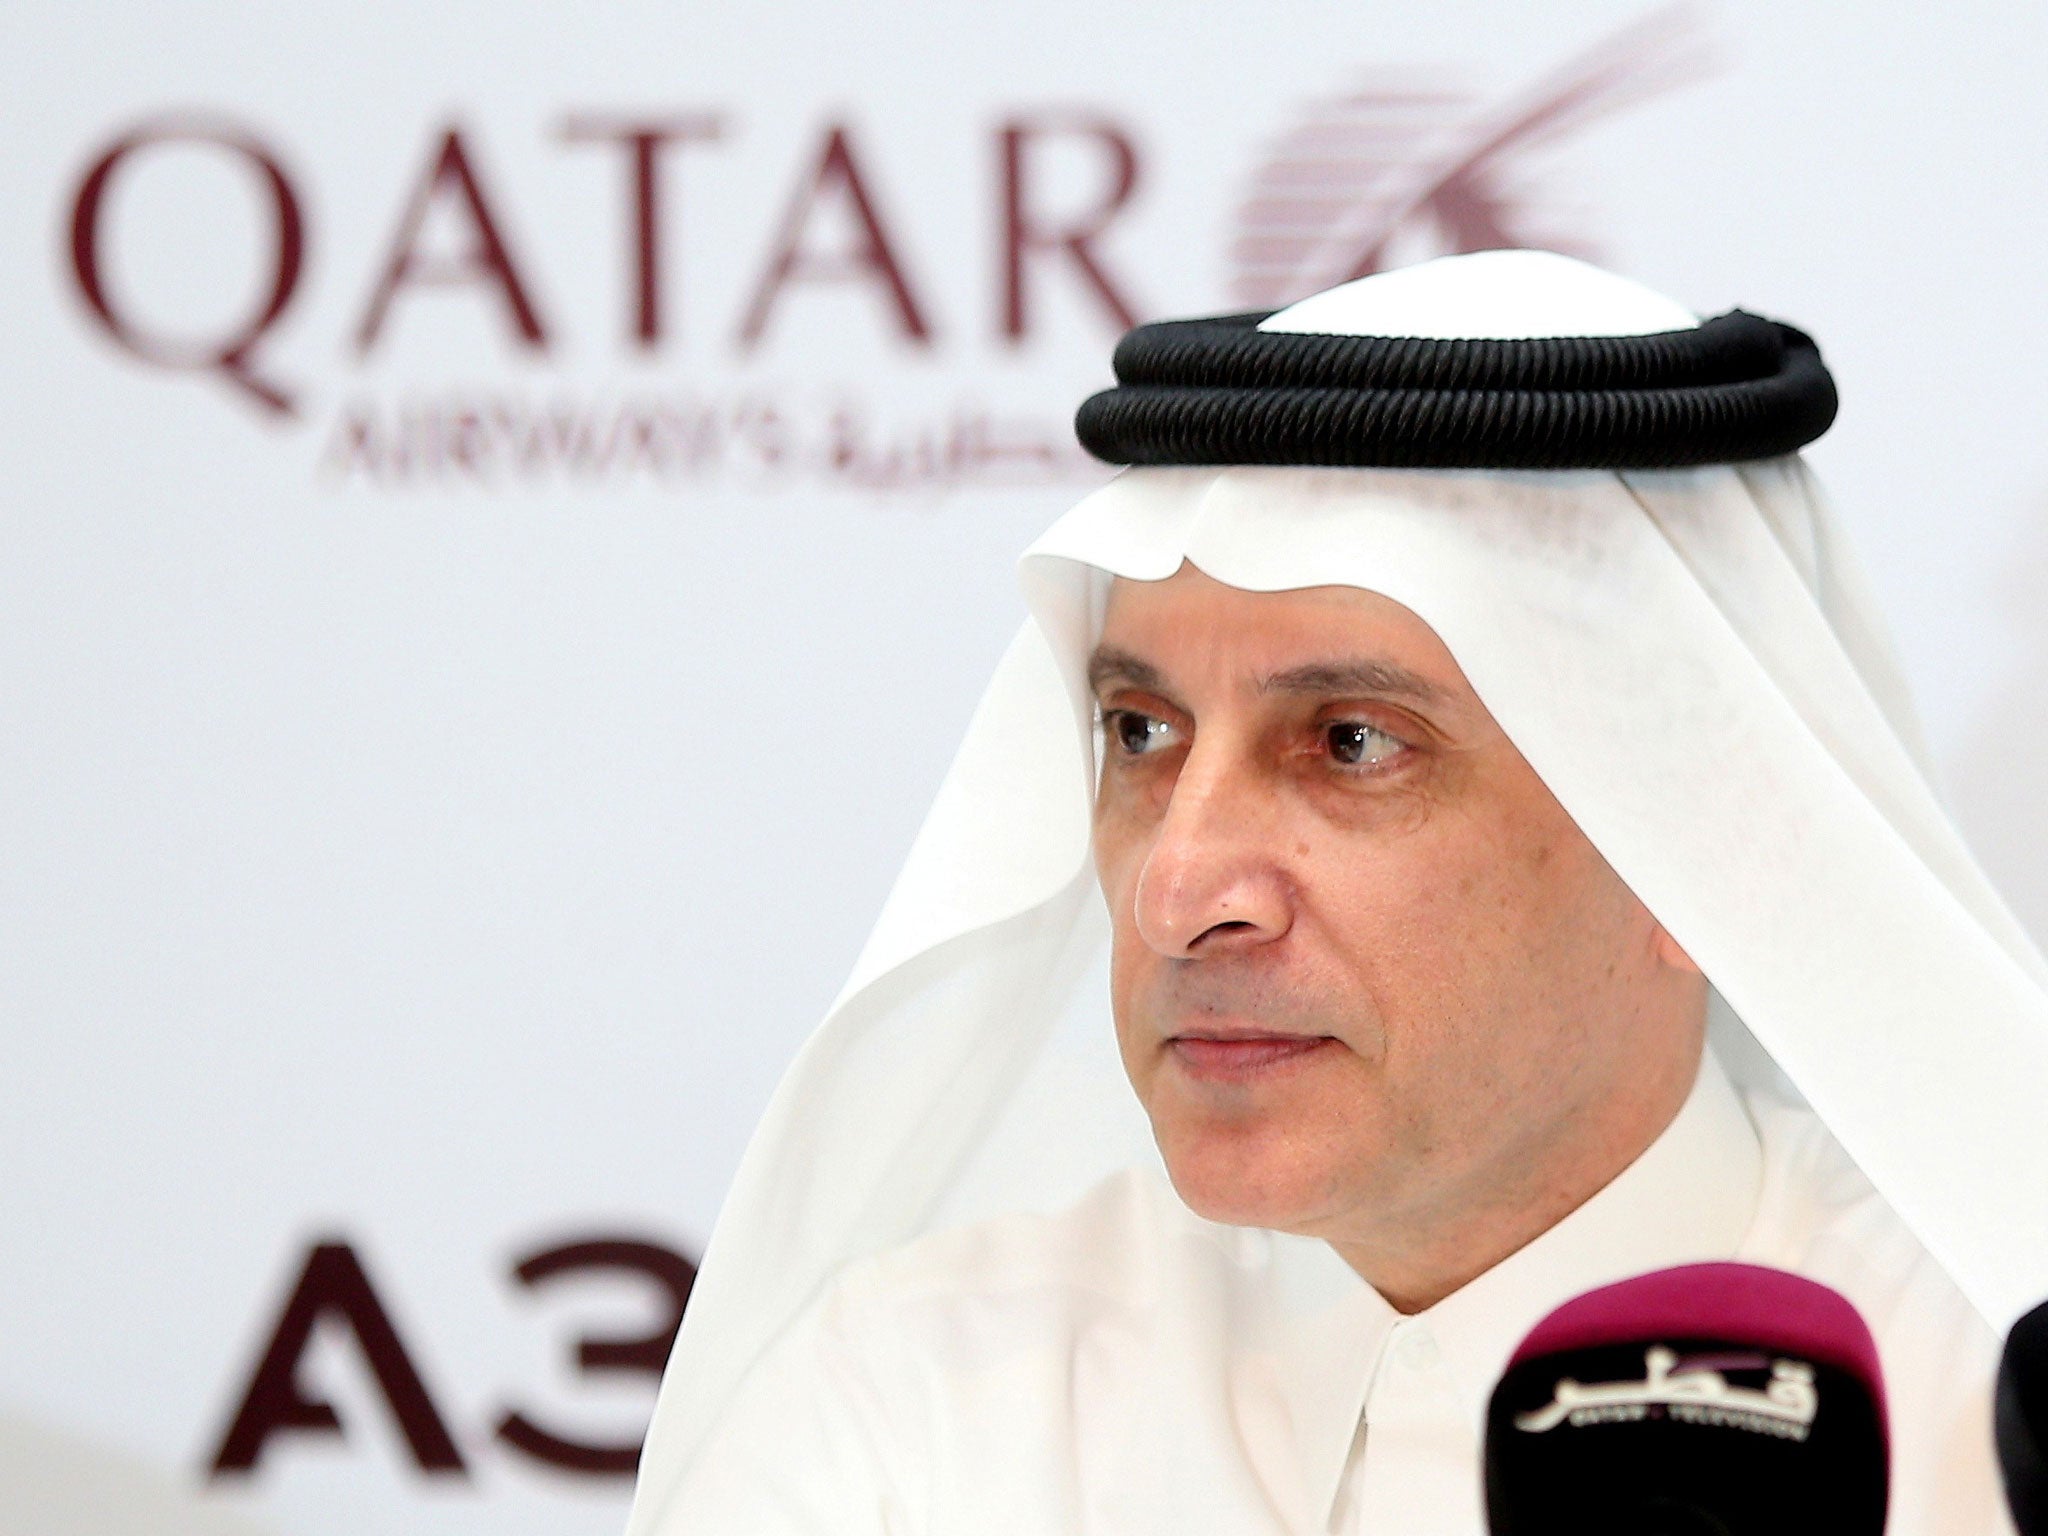 Qatar Airways chief executive Akbar Al Baker